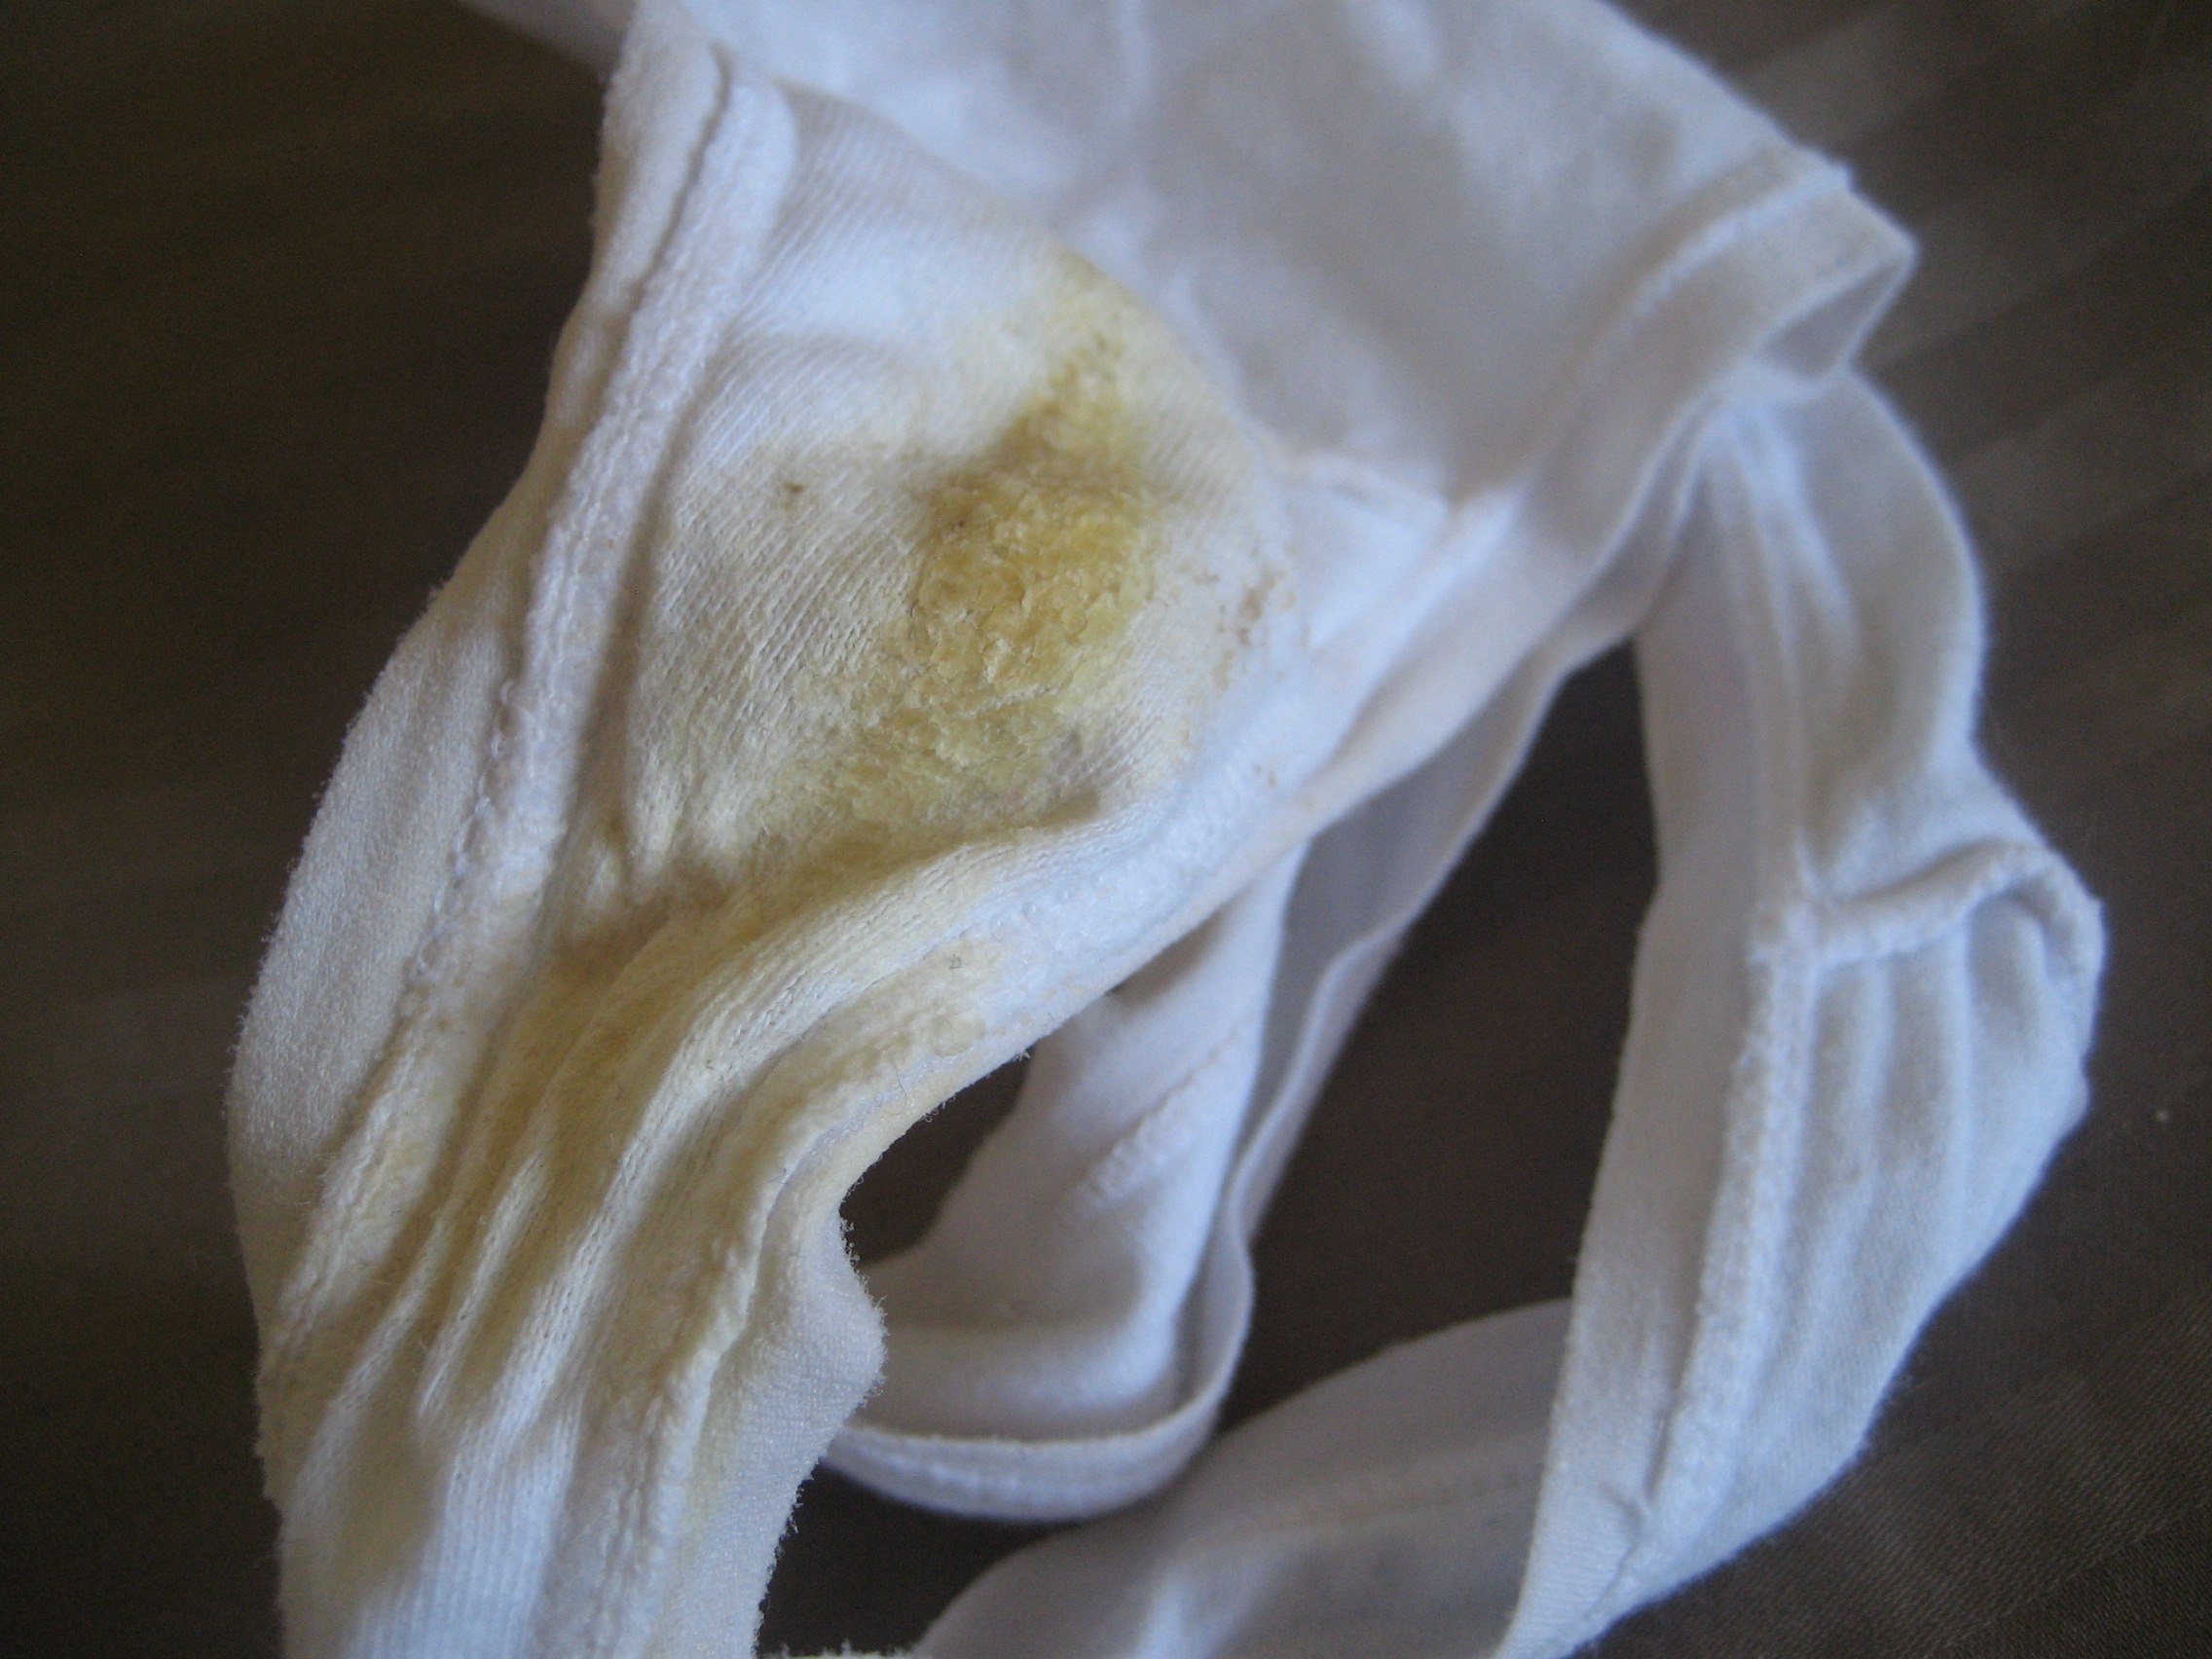 Soiled Used Panties 22